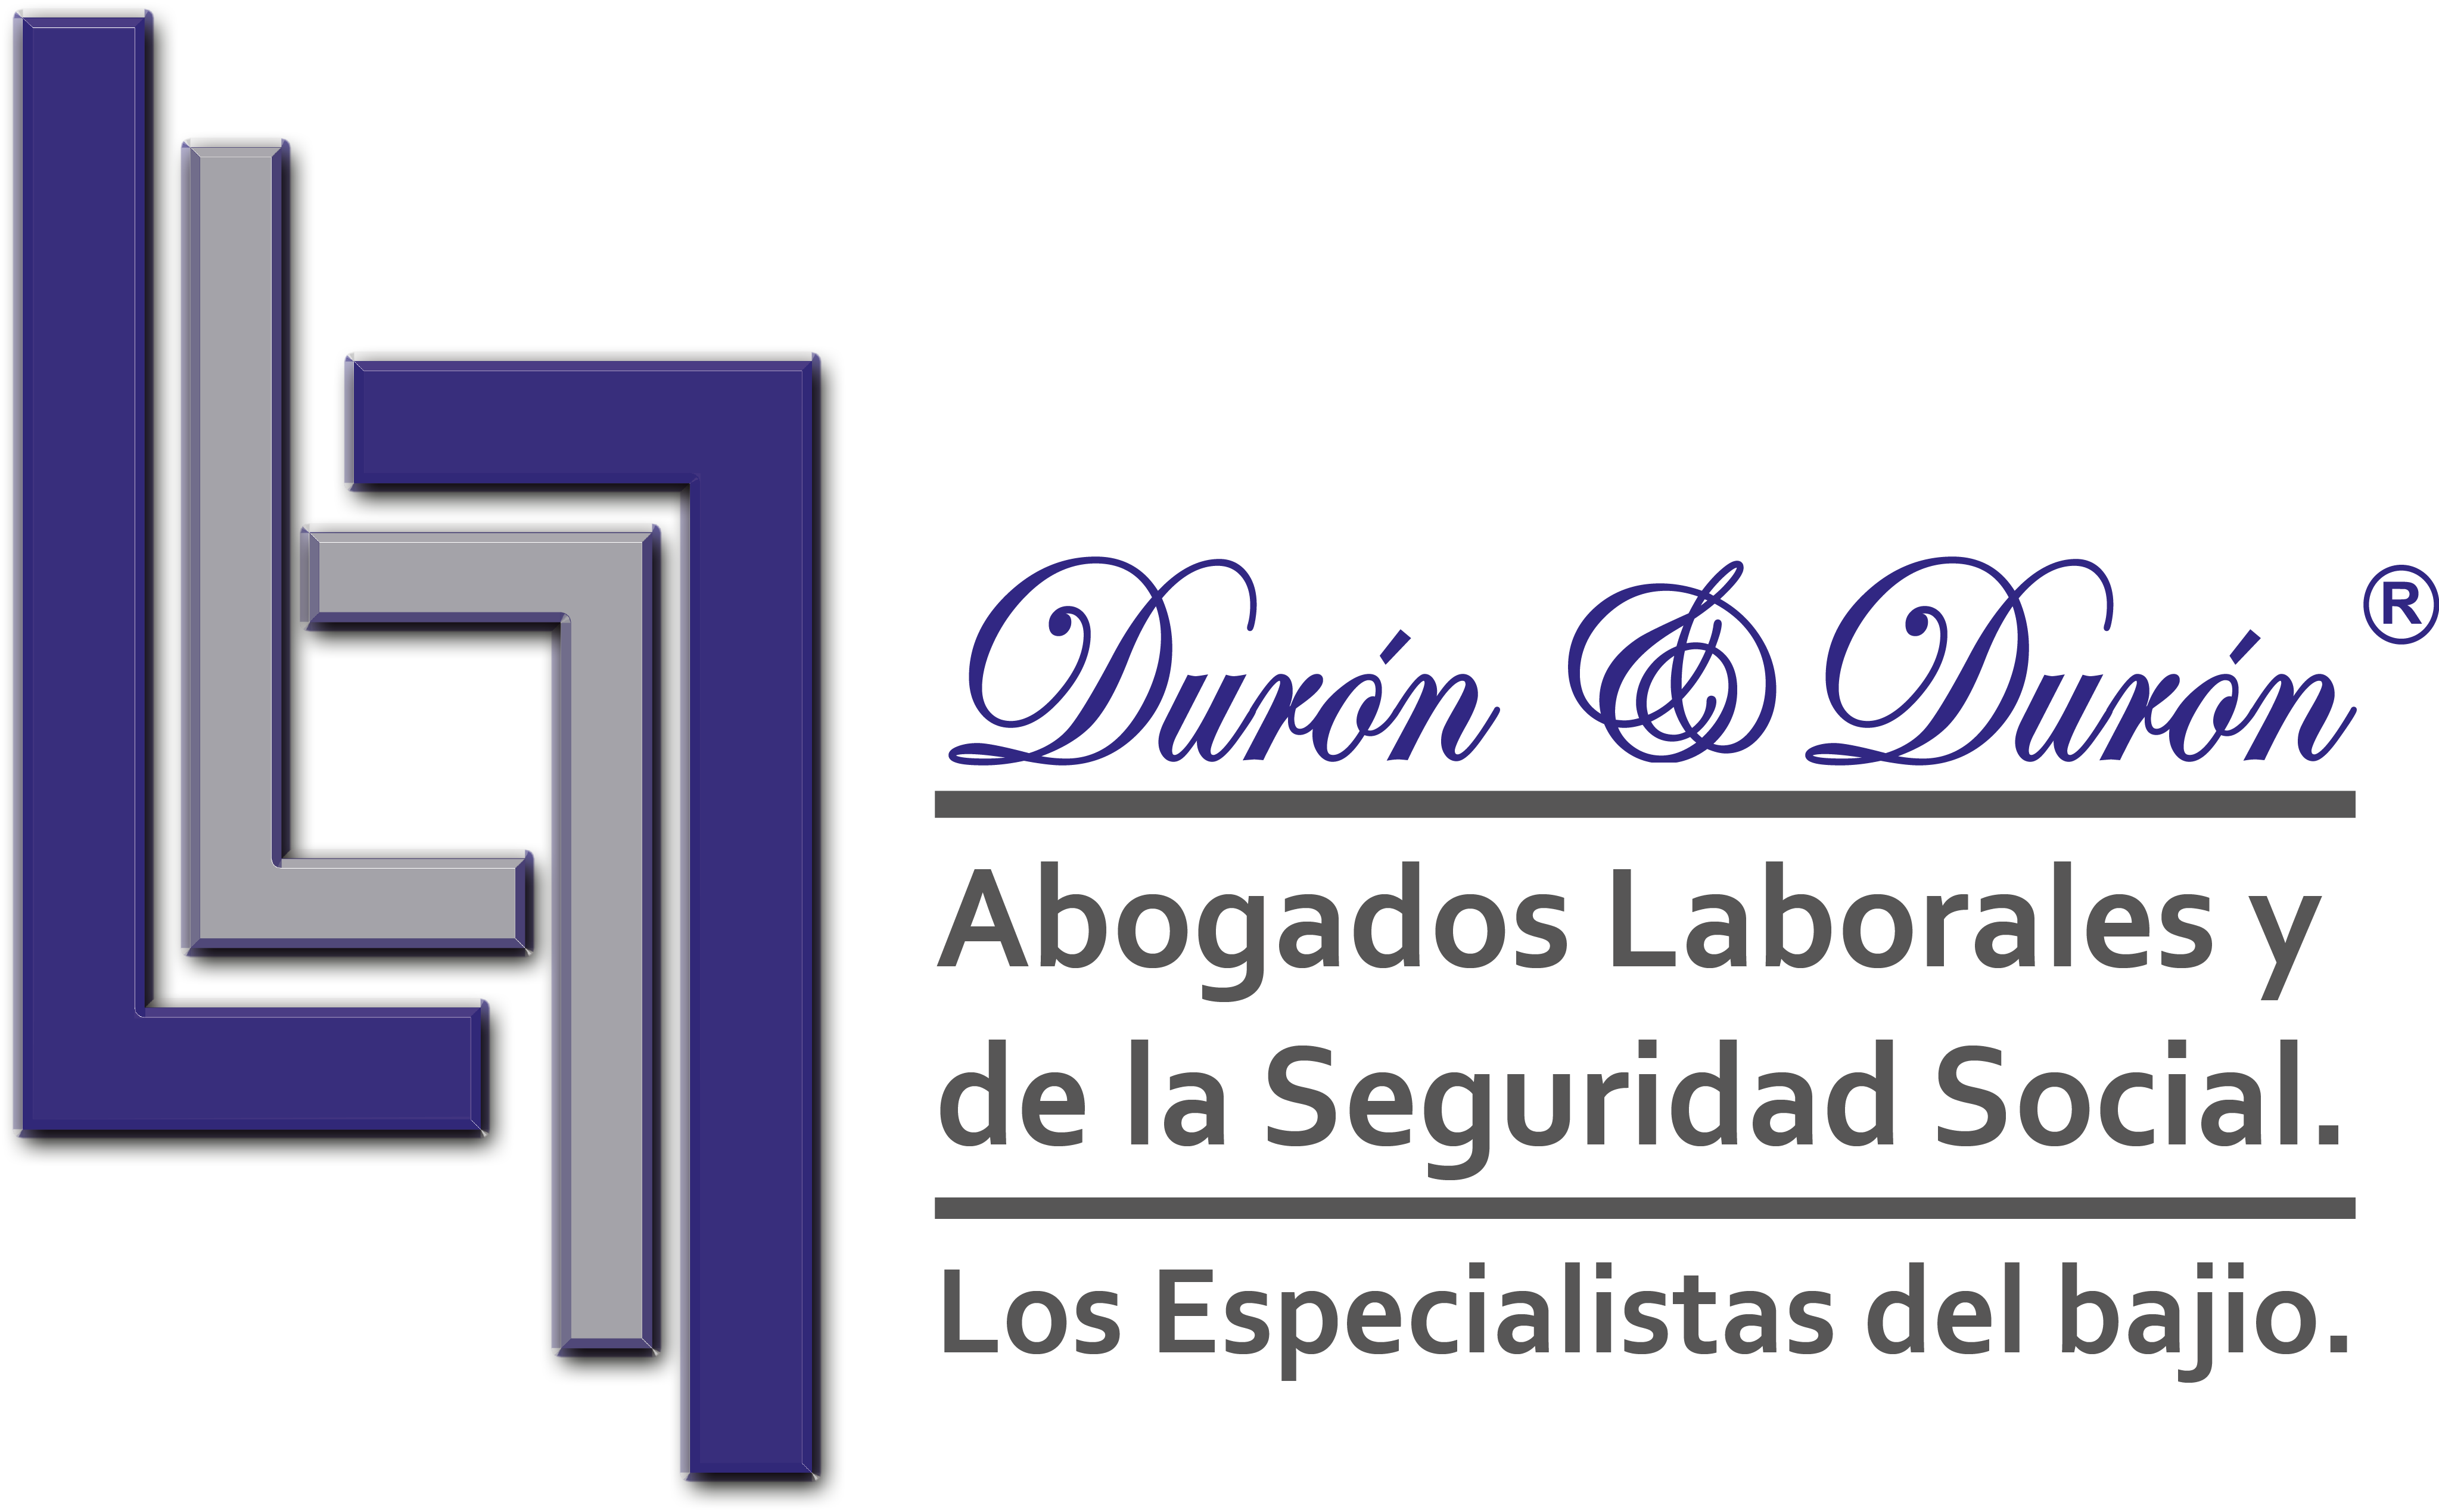 Duron&Duron Abogados Laborales y De La Seguridad Social